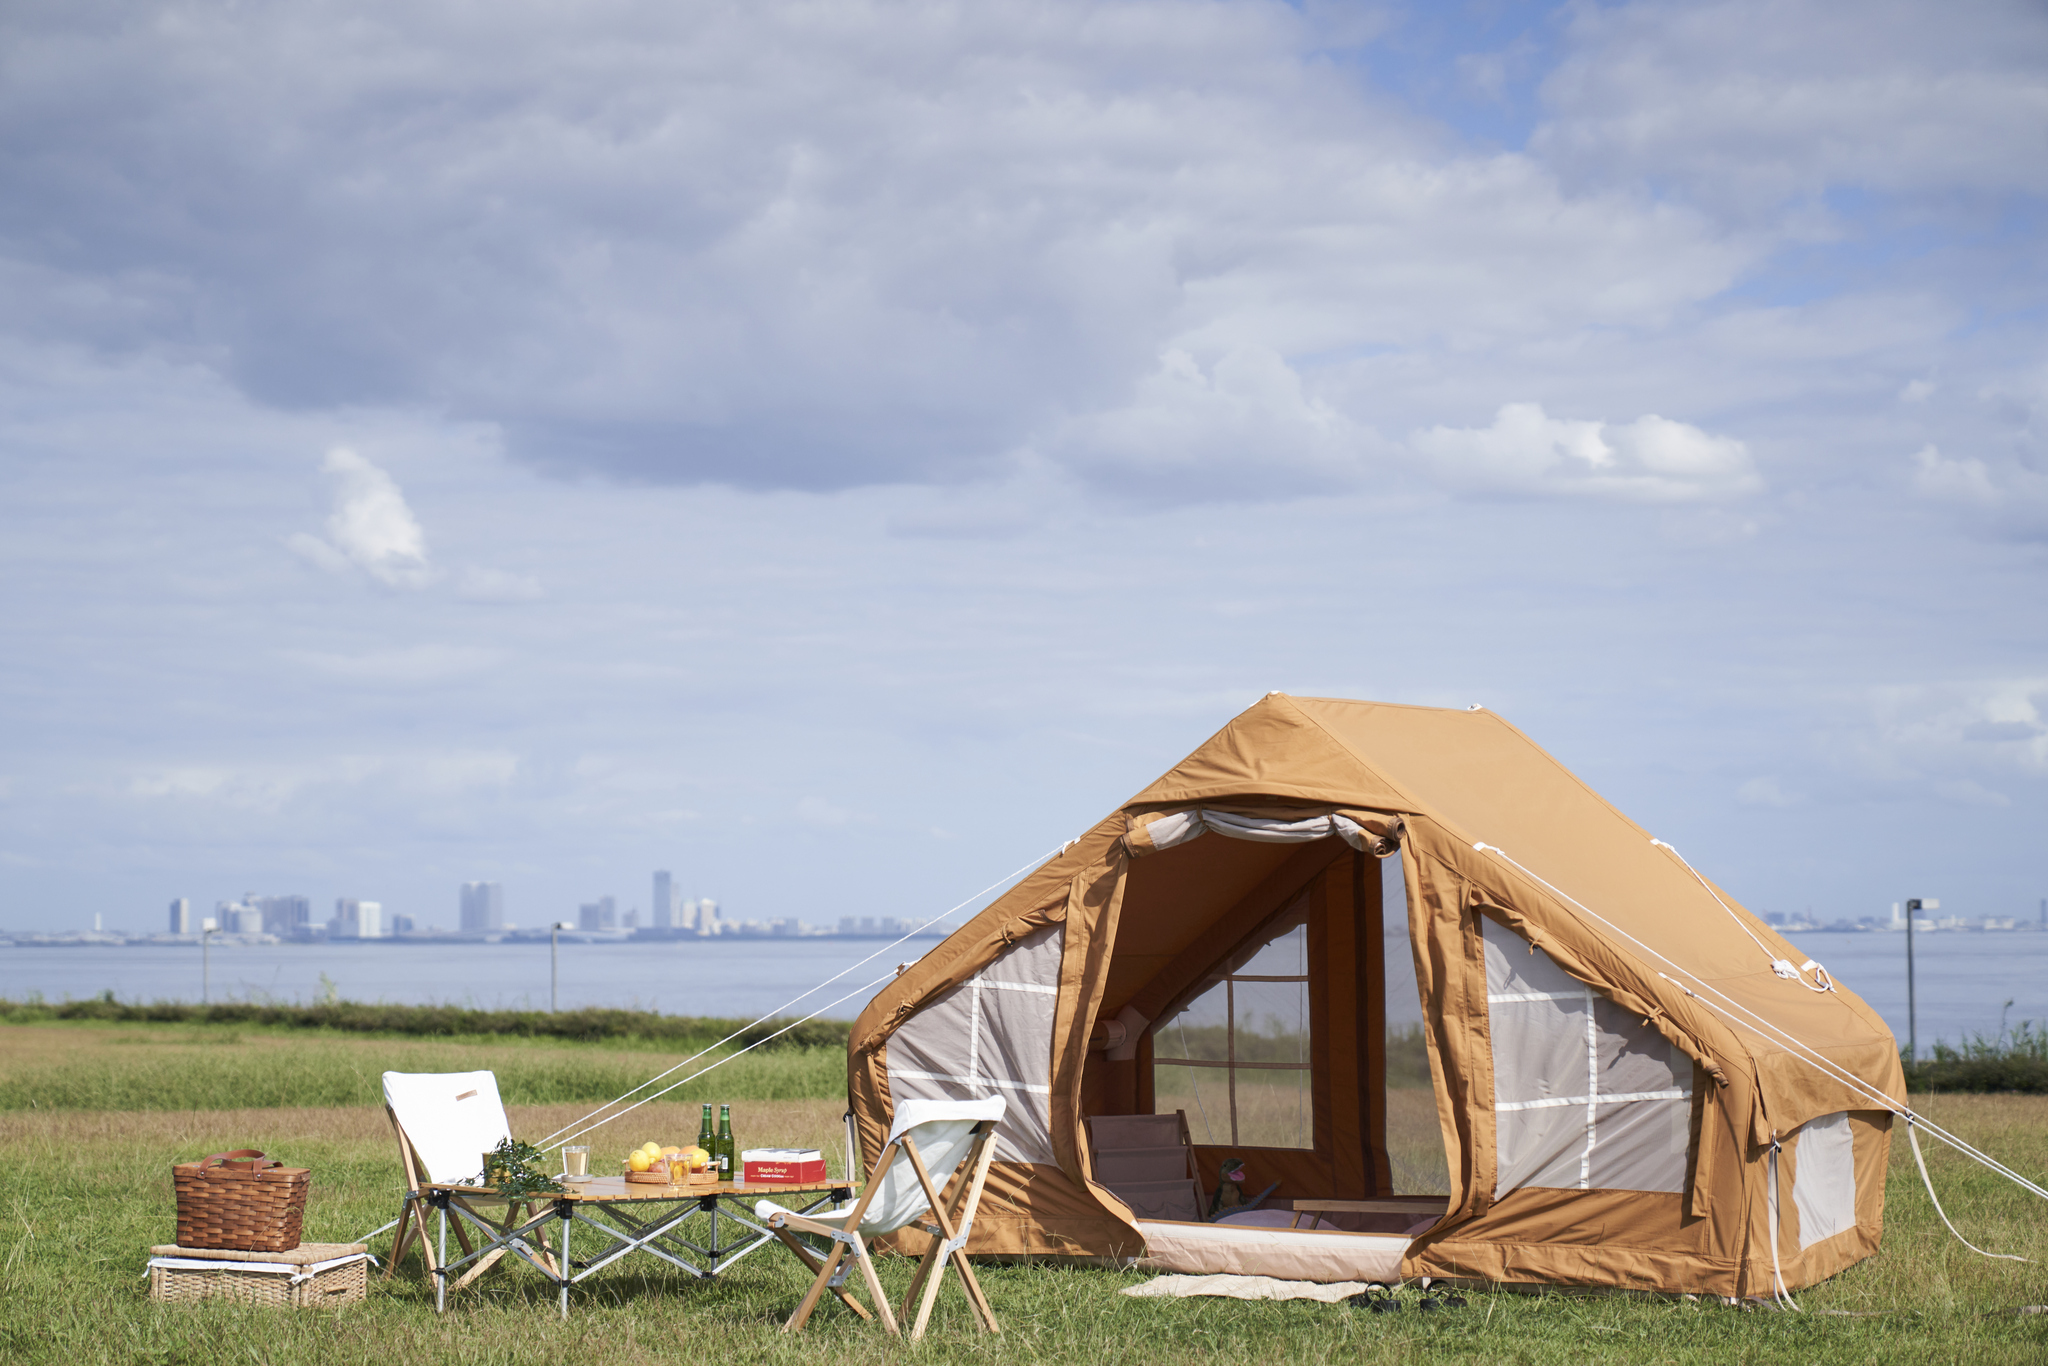 たった60秒でテント設営できる次世代型テント　
FUTURE STYLE Air Tent(フューチャースタイルエアーテント)の
先行予約販売をMakuakeにて11/13より開始